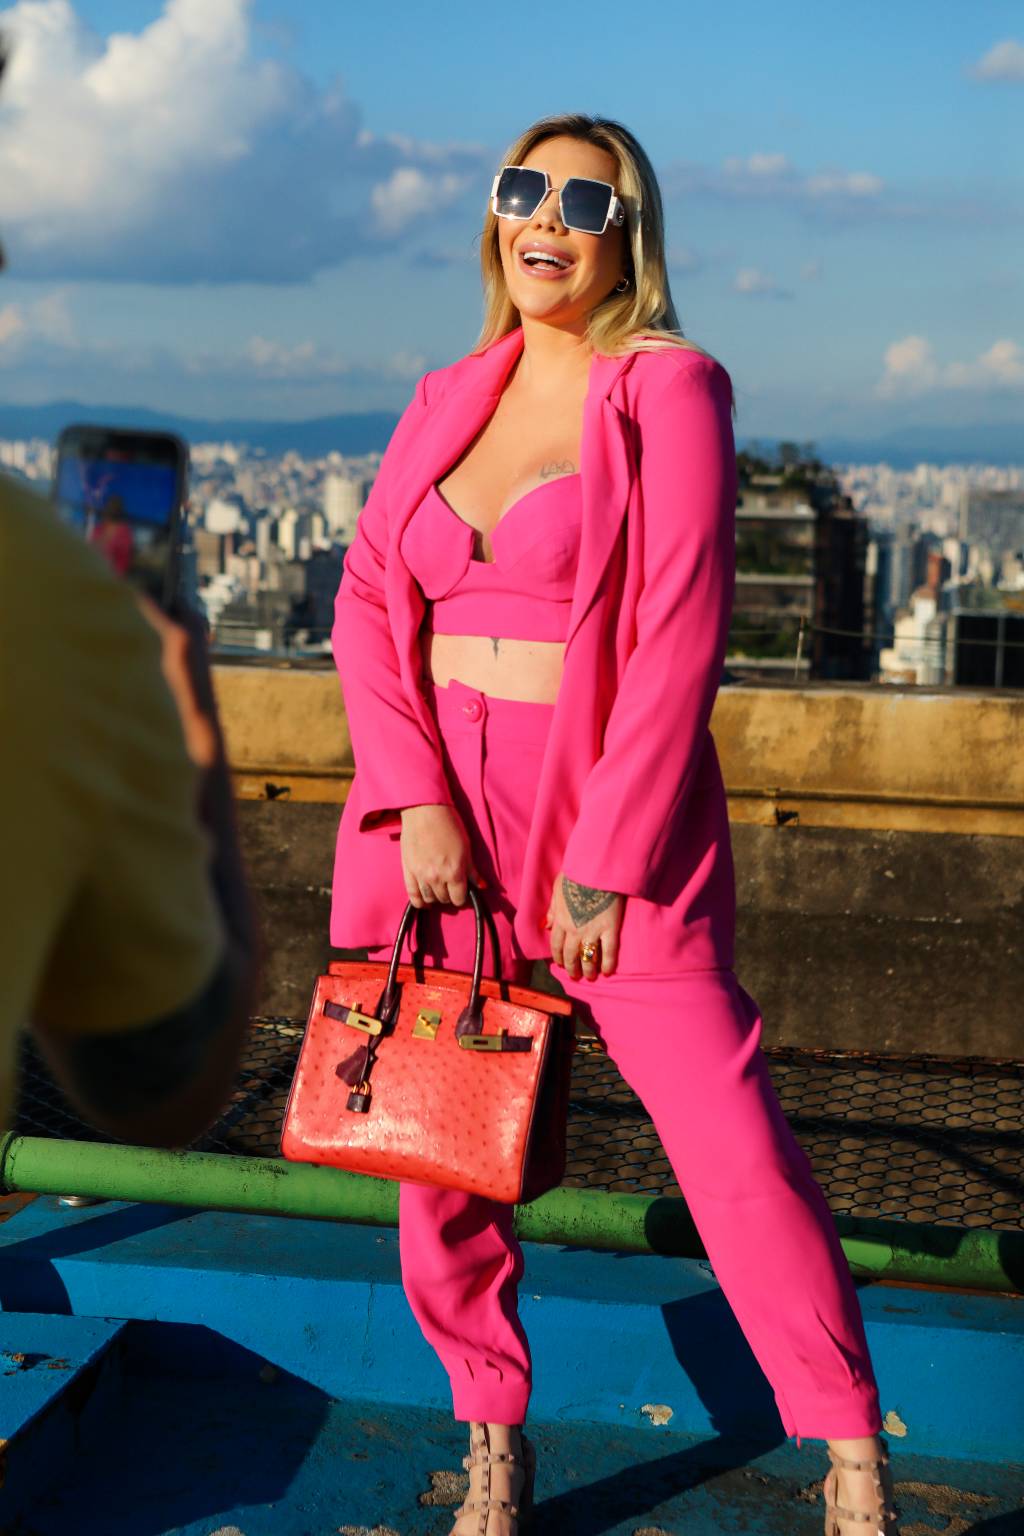 Mulher branca e loira posa no topo de prédio com roupas rosa pink e bolsa na mão direita.